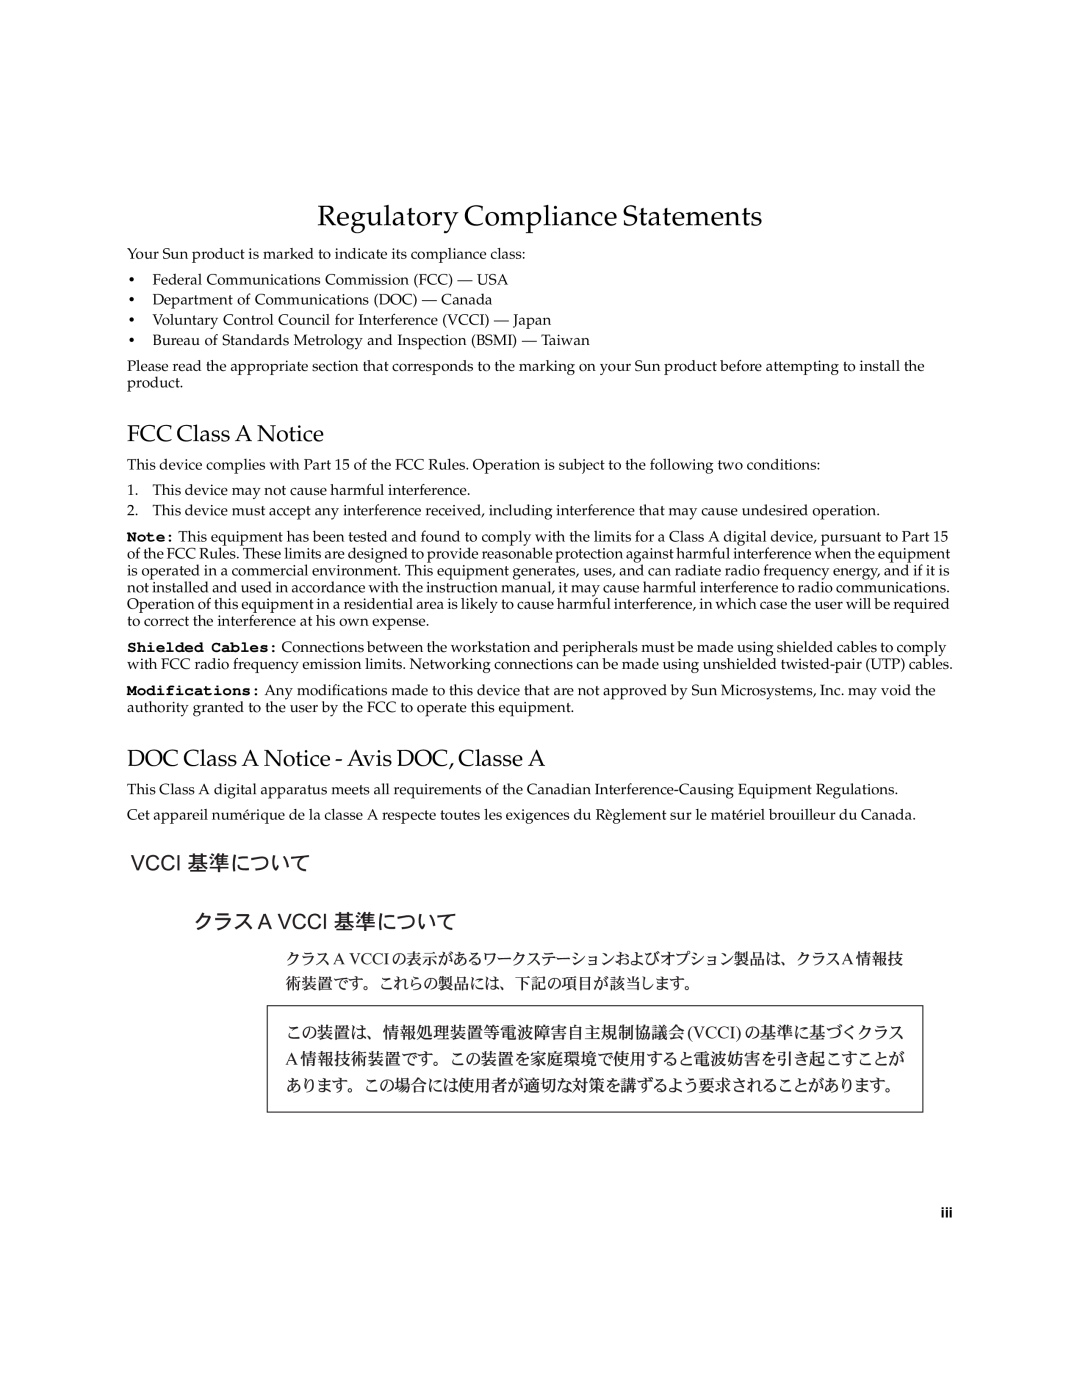 Sun Microsystems 220R manual Regulatory Compliance Statements, FCC Class A Notice, DOC Class A Notice - Avis DOC, Classe A 